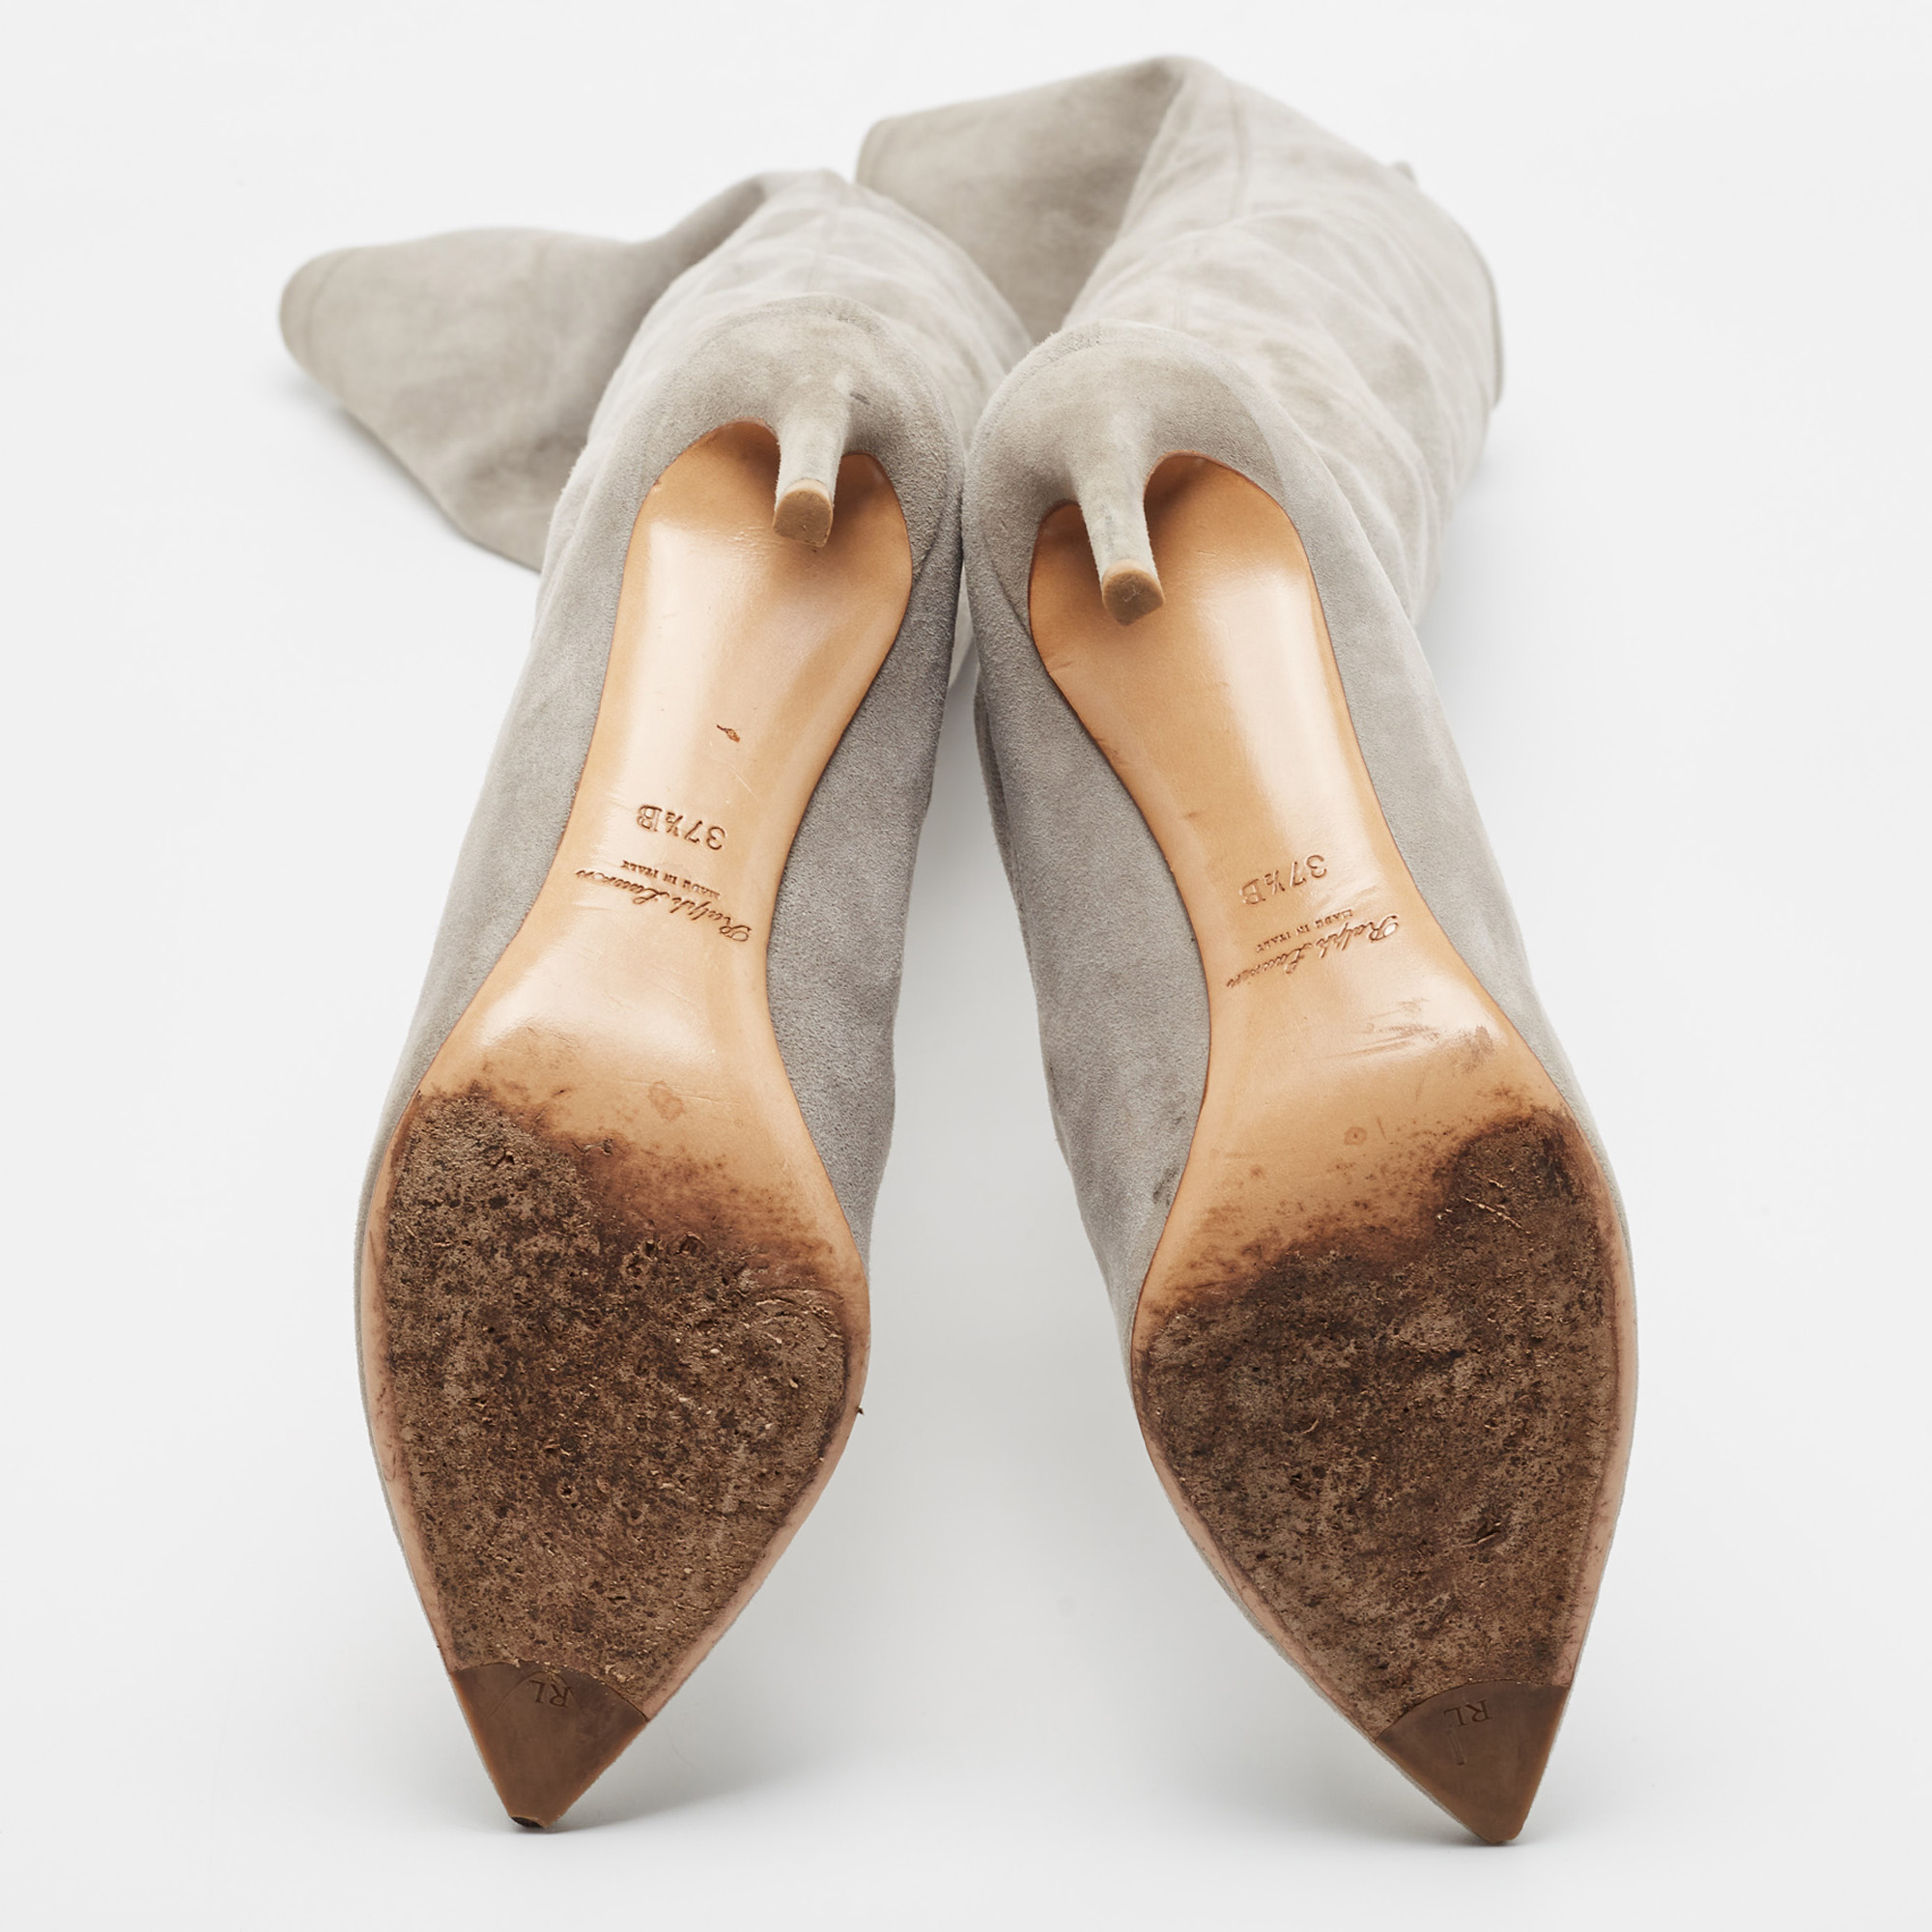 Ralph Lauren Grey Suede Knee Length Boots Size 37.5